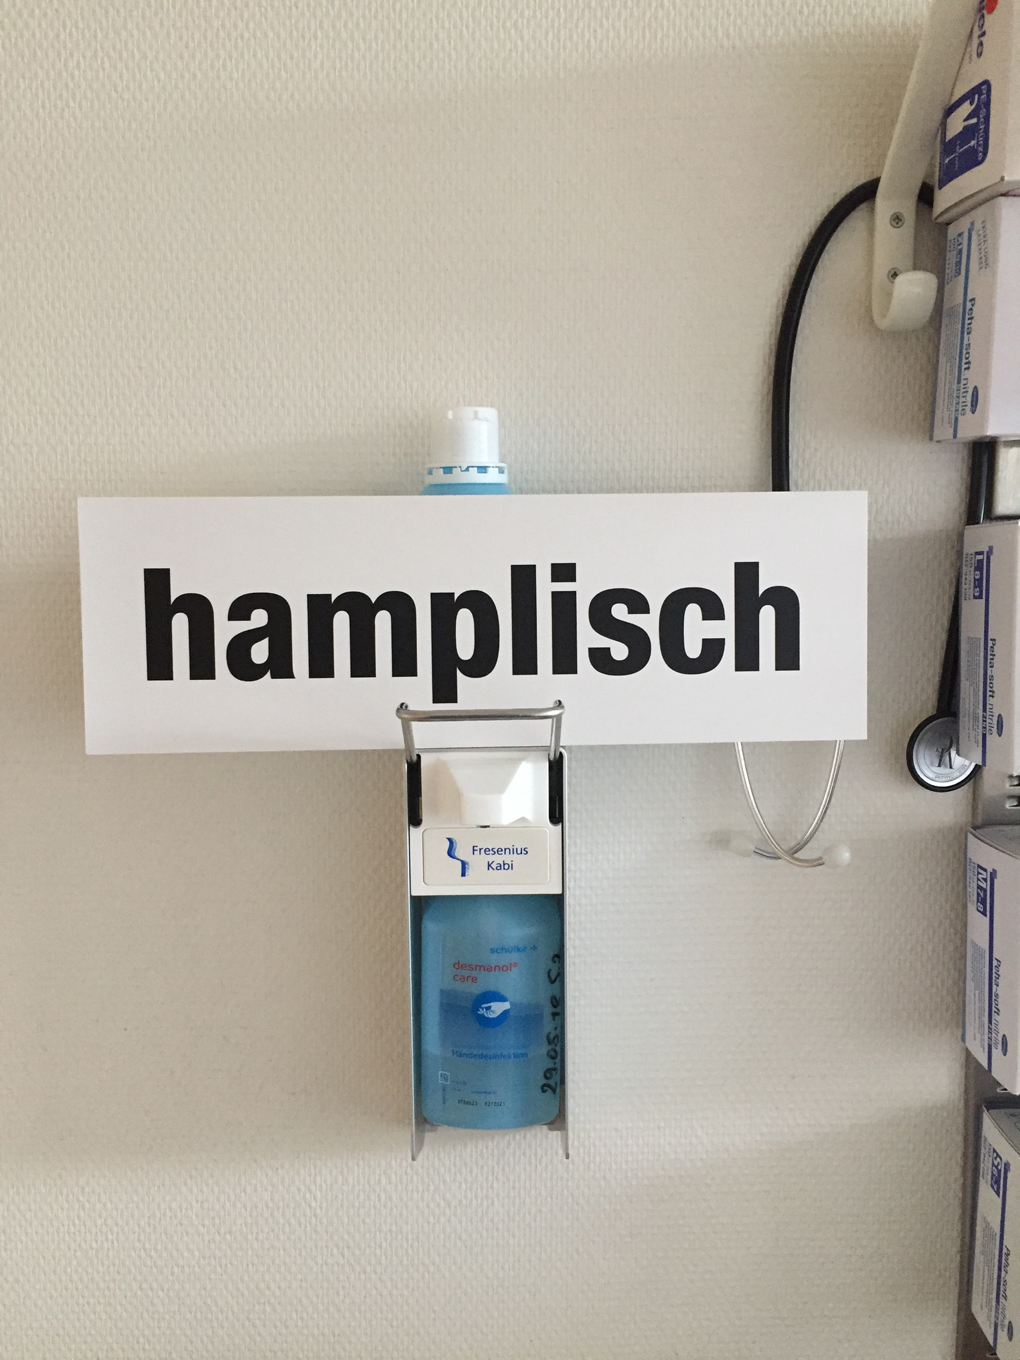 hamplisch